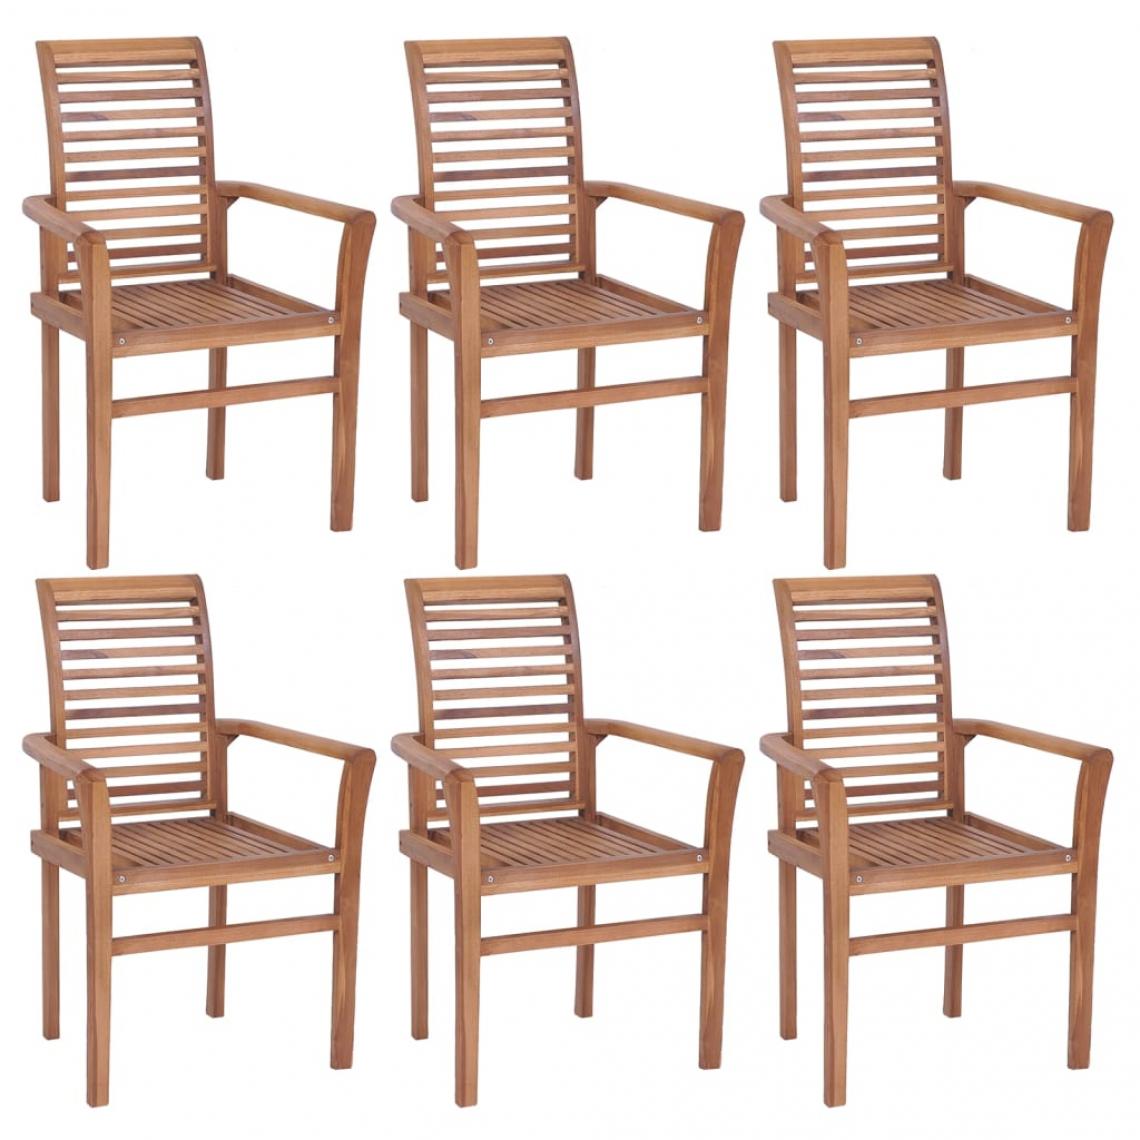 Decoshop26 - Lot de 6 chaises de jardin ou salle à manger cuisine empilables bois de teck solide CDS022392 - Chaises